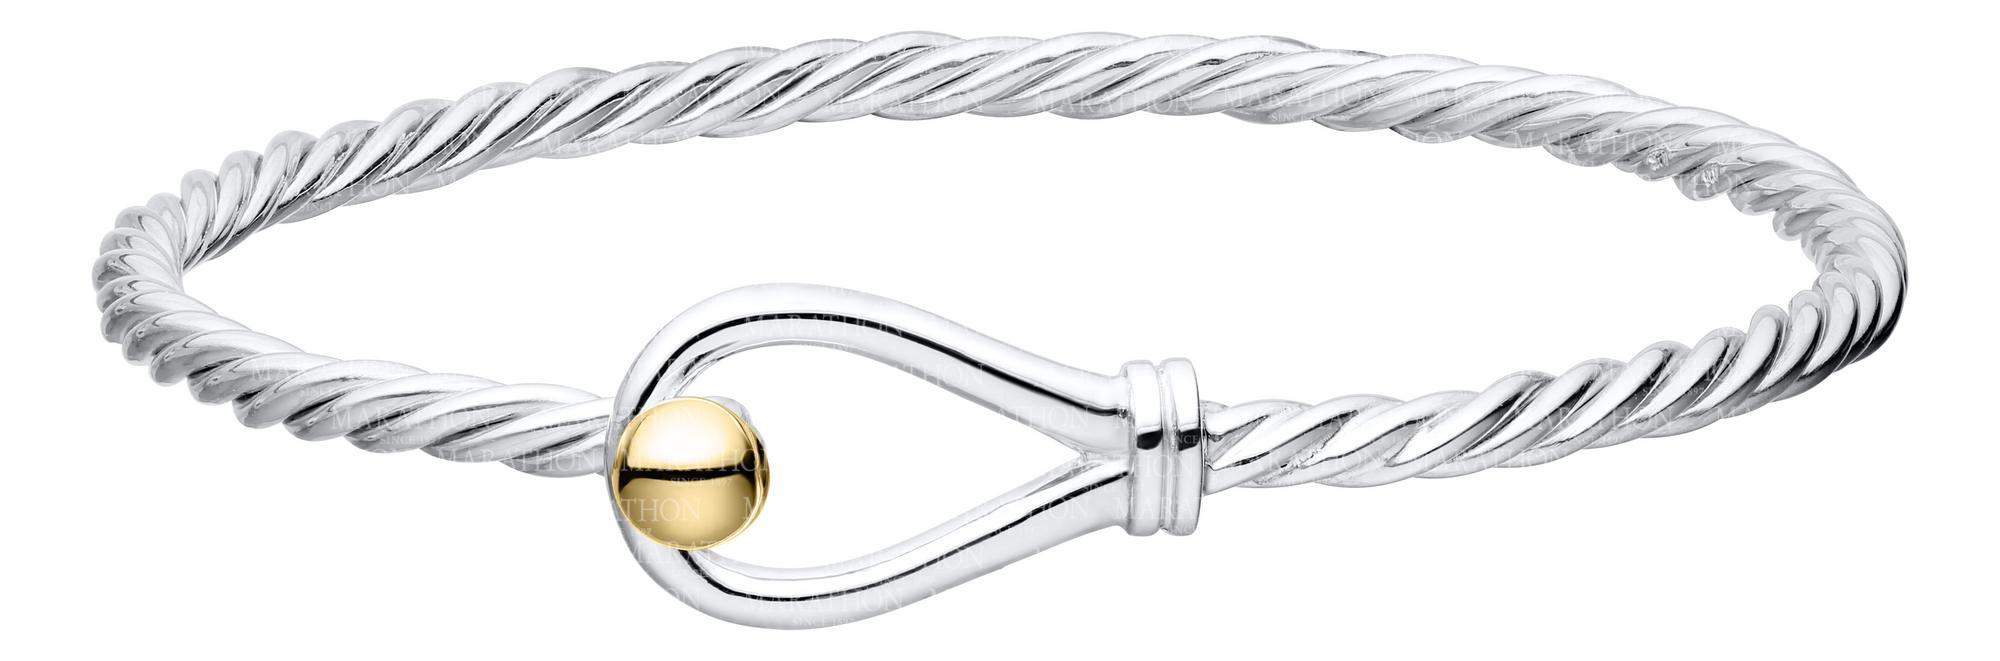 Sterling Silver 14 Karat Yellow Gold Loop Bracelet-Twist Wire-70